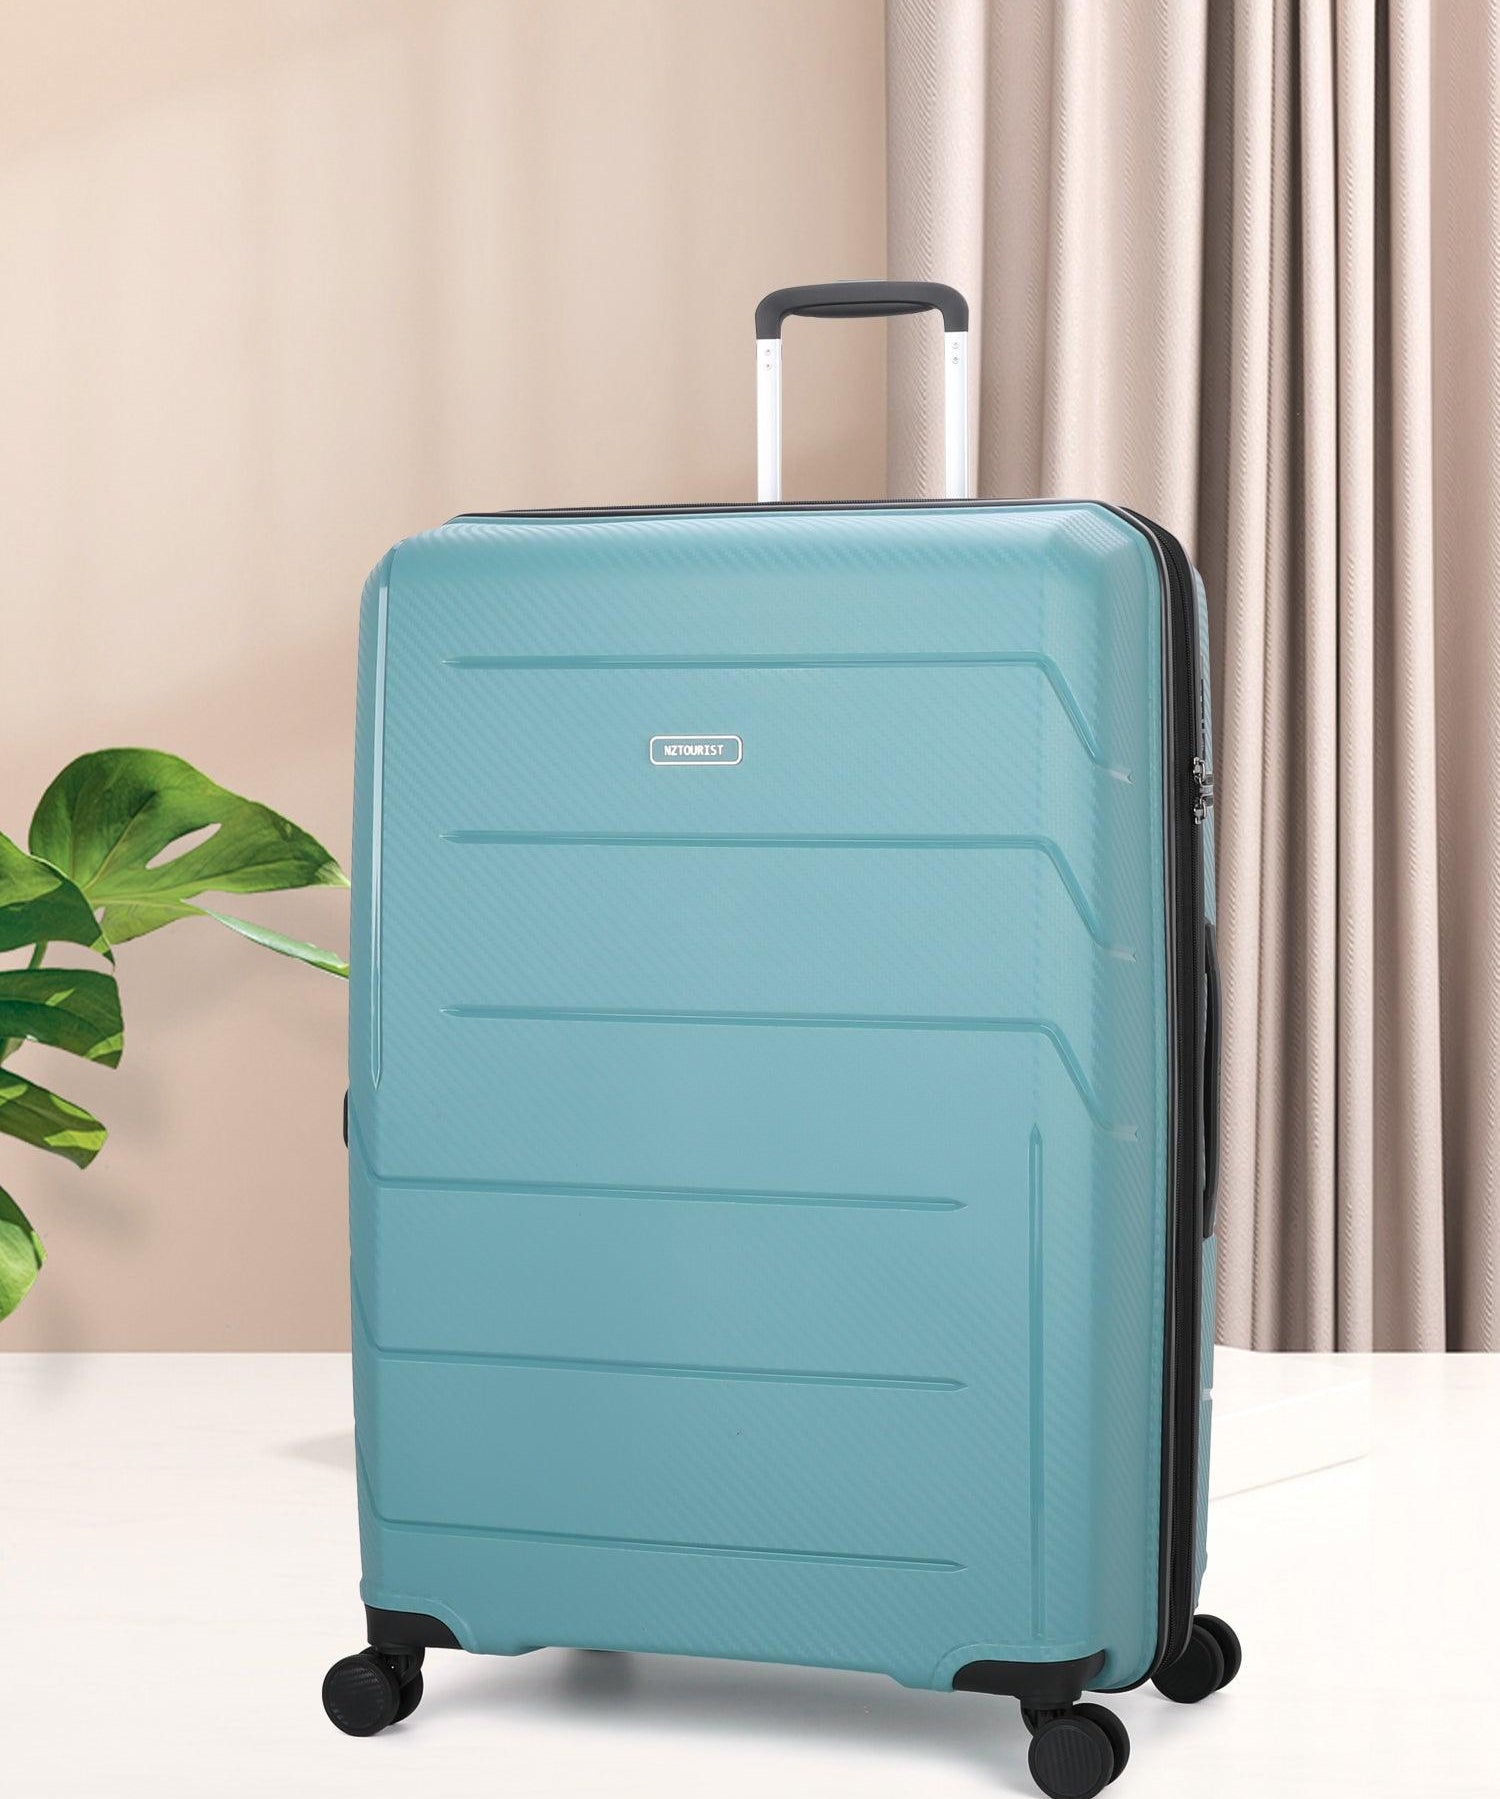 NZTourist Ultra-Light Traveller 78cm Suitcase - Black - San Michelle Bags suitcase nz